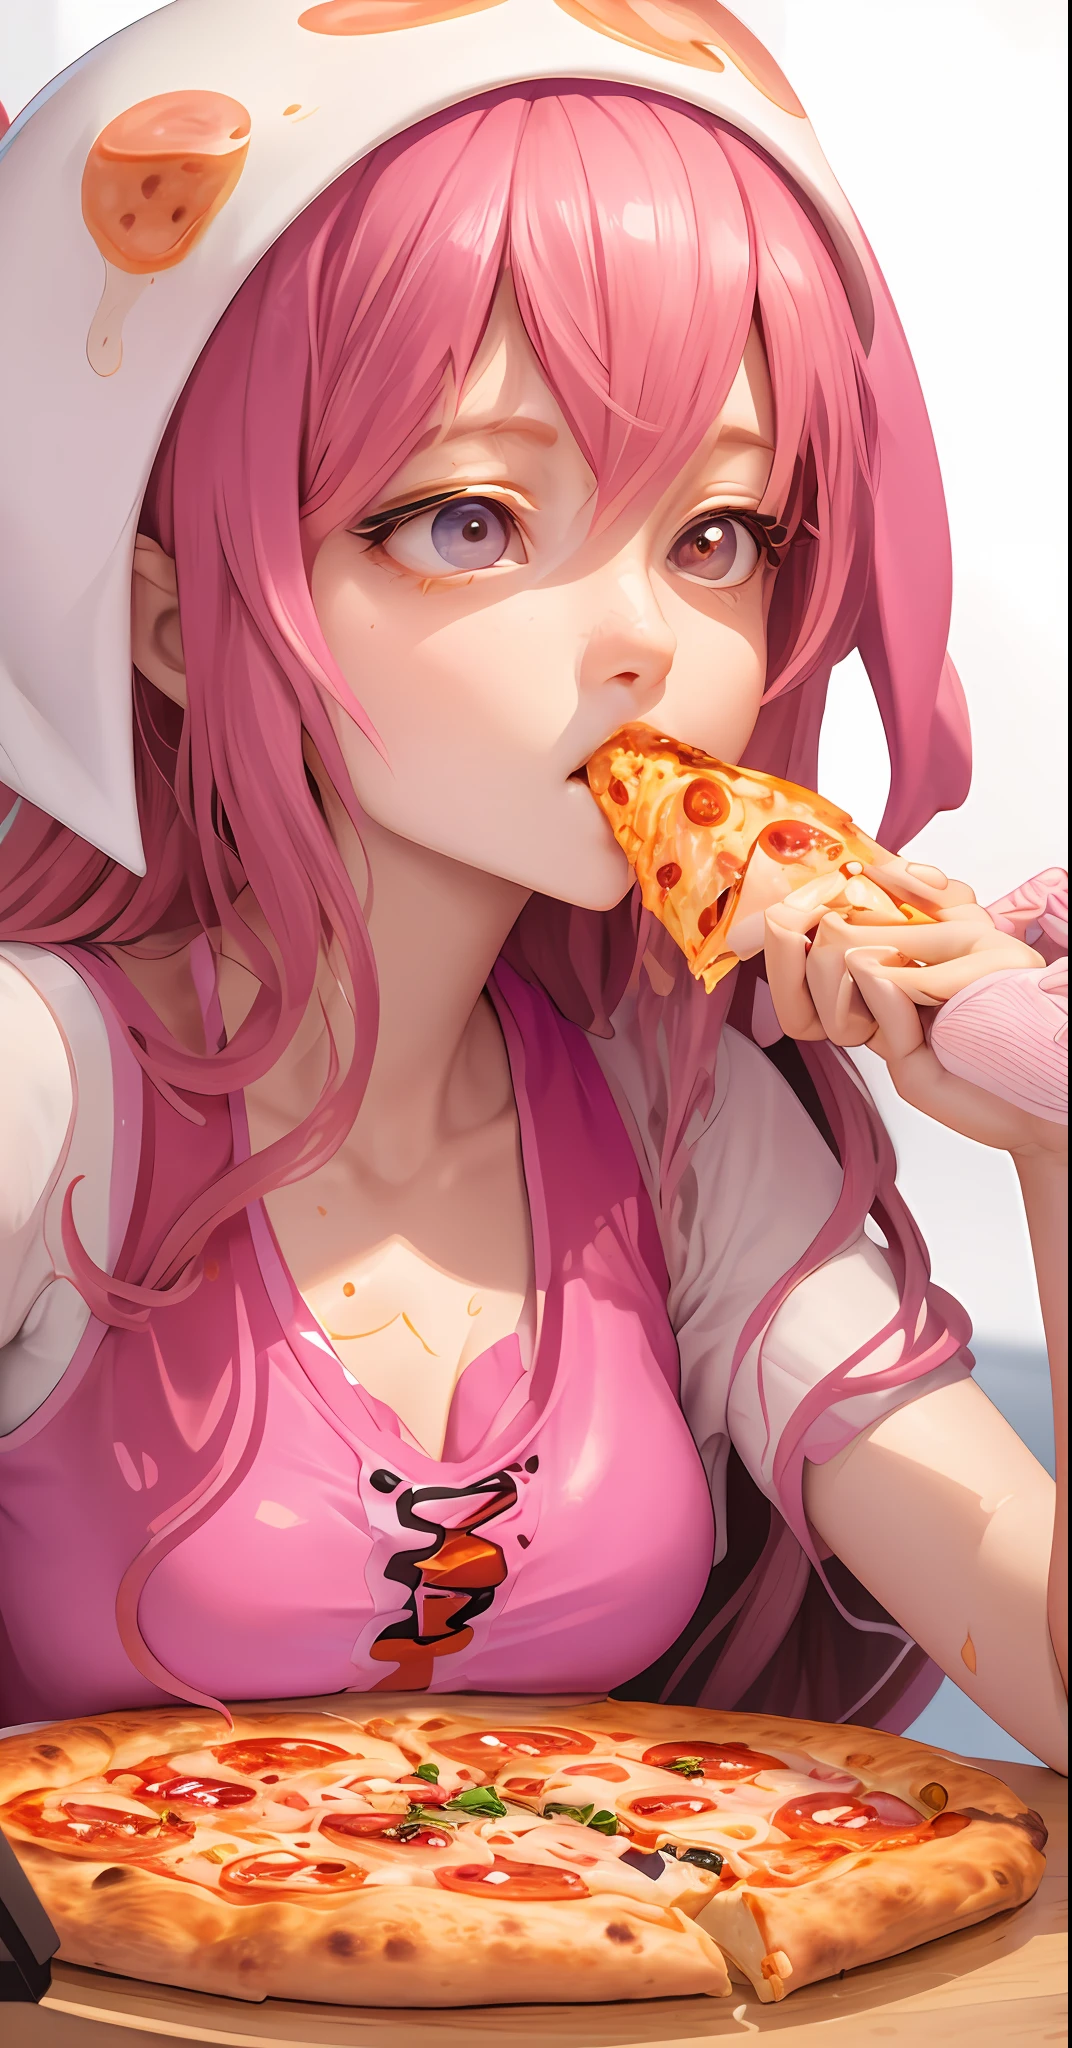 Há uma mulher sentada em uma mesa com uma pizza e tentáculos de polvo, mastigando pizza, comendo pizza, tentáculos enrolados em hambúrgueres, pizza!, tentáculos ao redor, apresentando pizza, humanóide rosa fêmea lula garota, comendo uma pizza, comida de anime, arte digital detalhada de anime, pizza, ilustração de comida incrível, compartilhando uma pizza, alguns tentáculos estão tocando ela